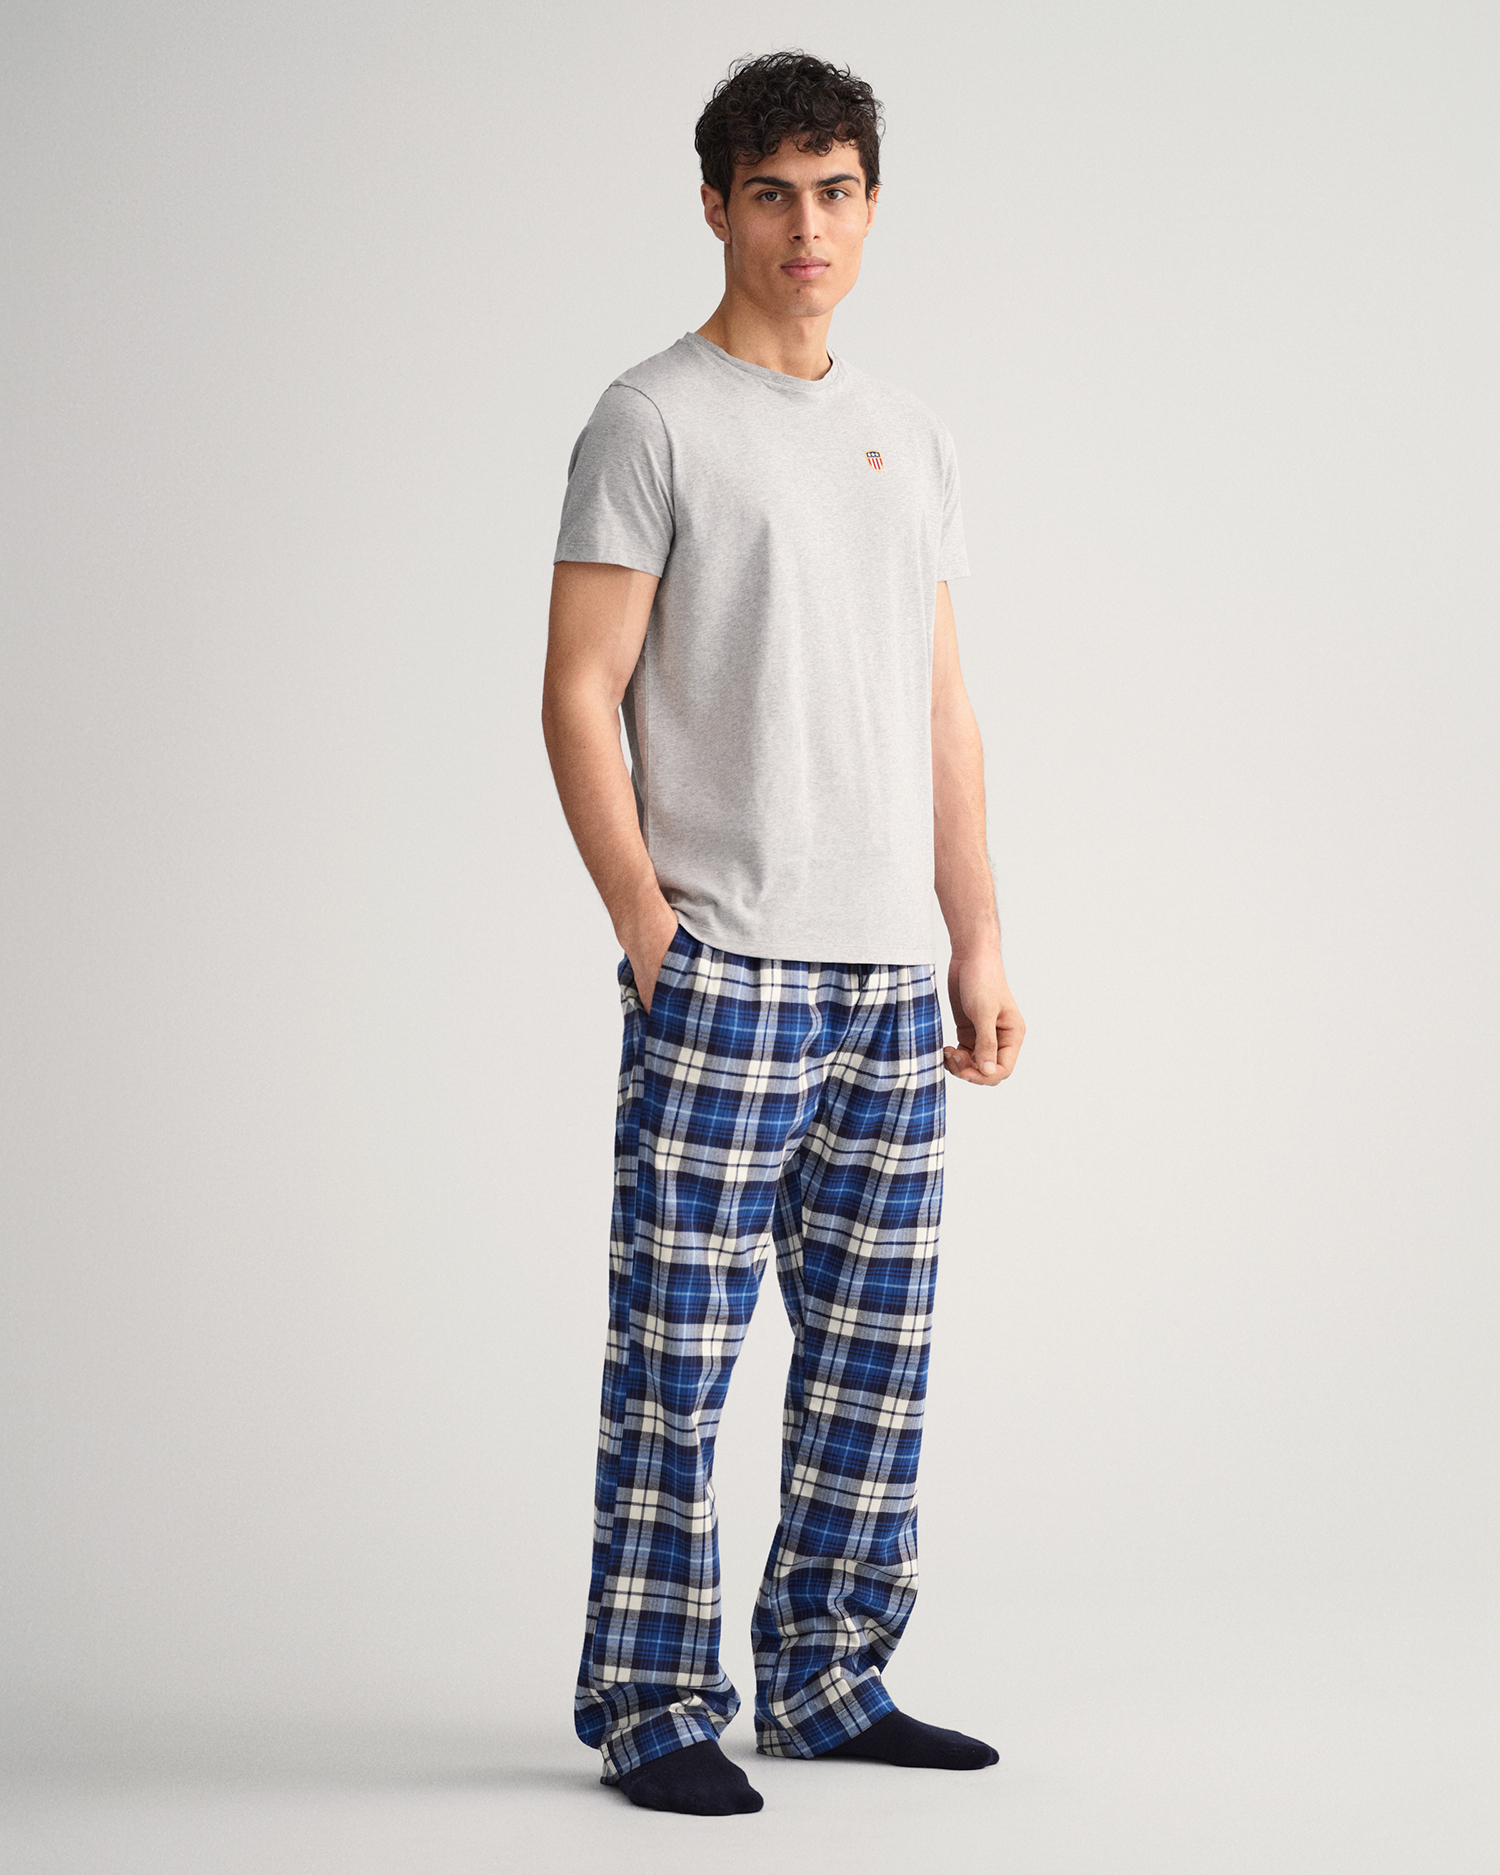 Cotton Pajama Pants in Bag- Large – Oleander Floral Design